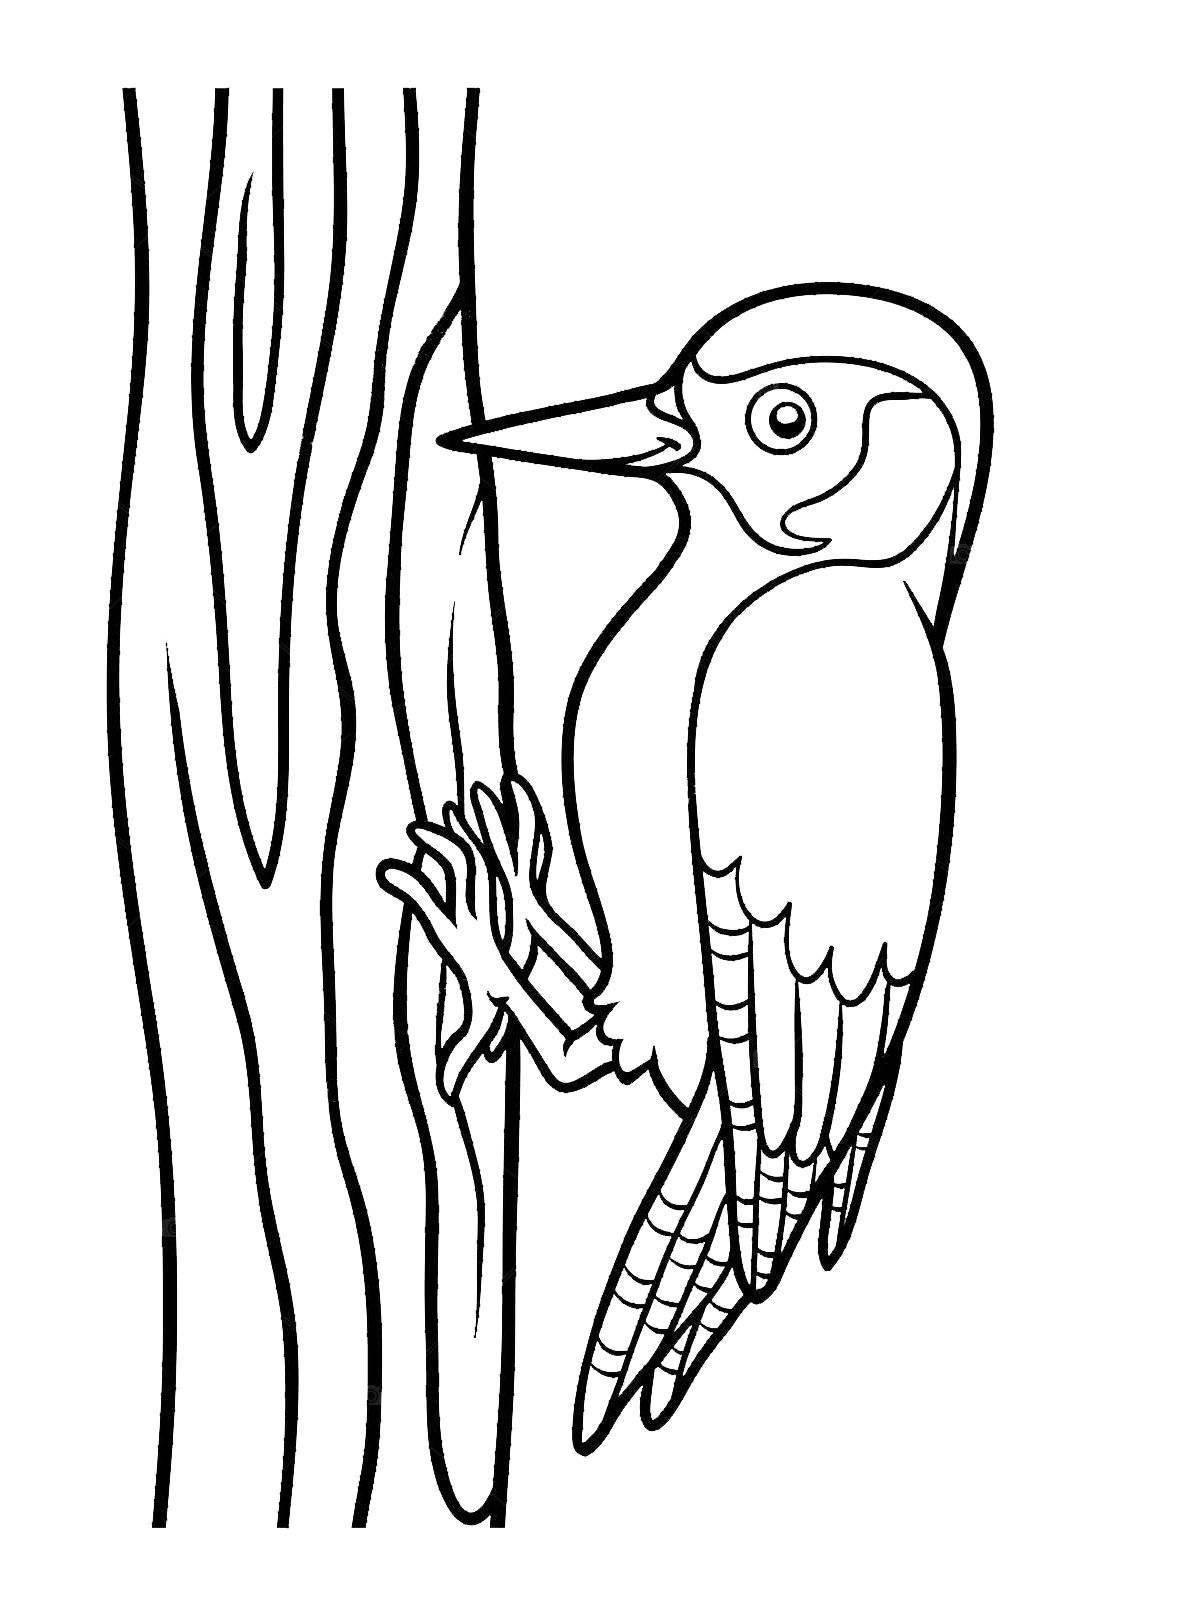 Woodpecker on a tree #1